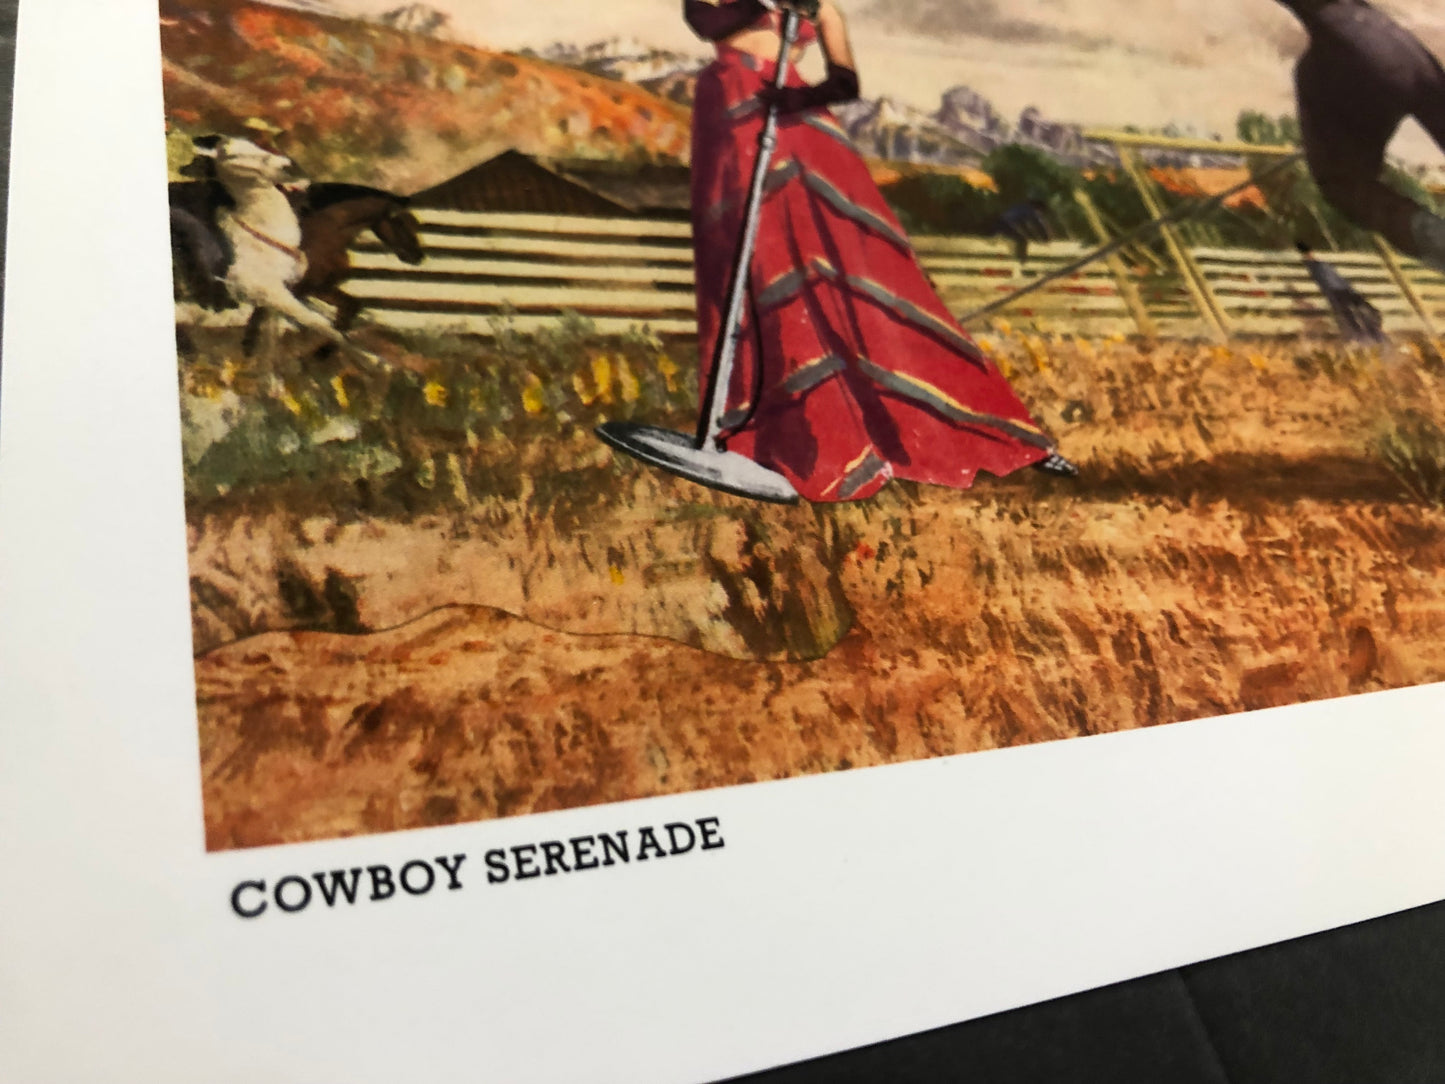 Winston Smith "Cowboy Serenade" Print